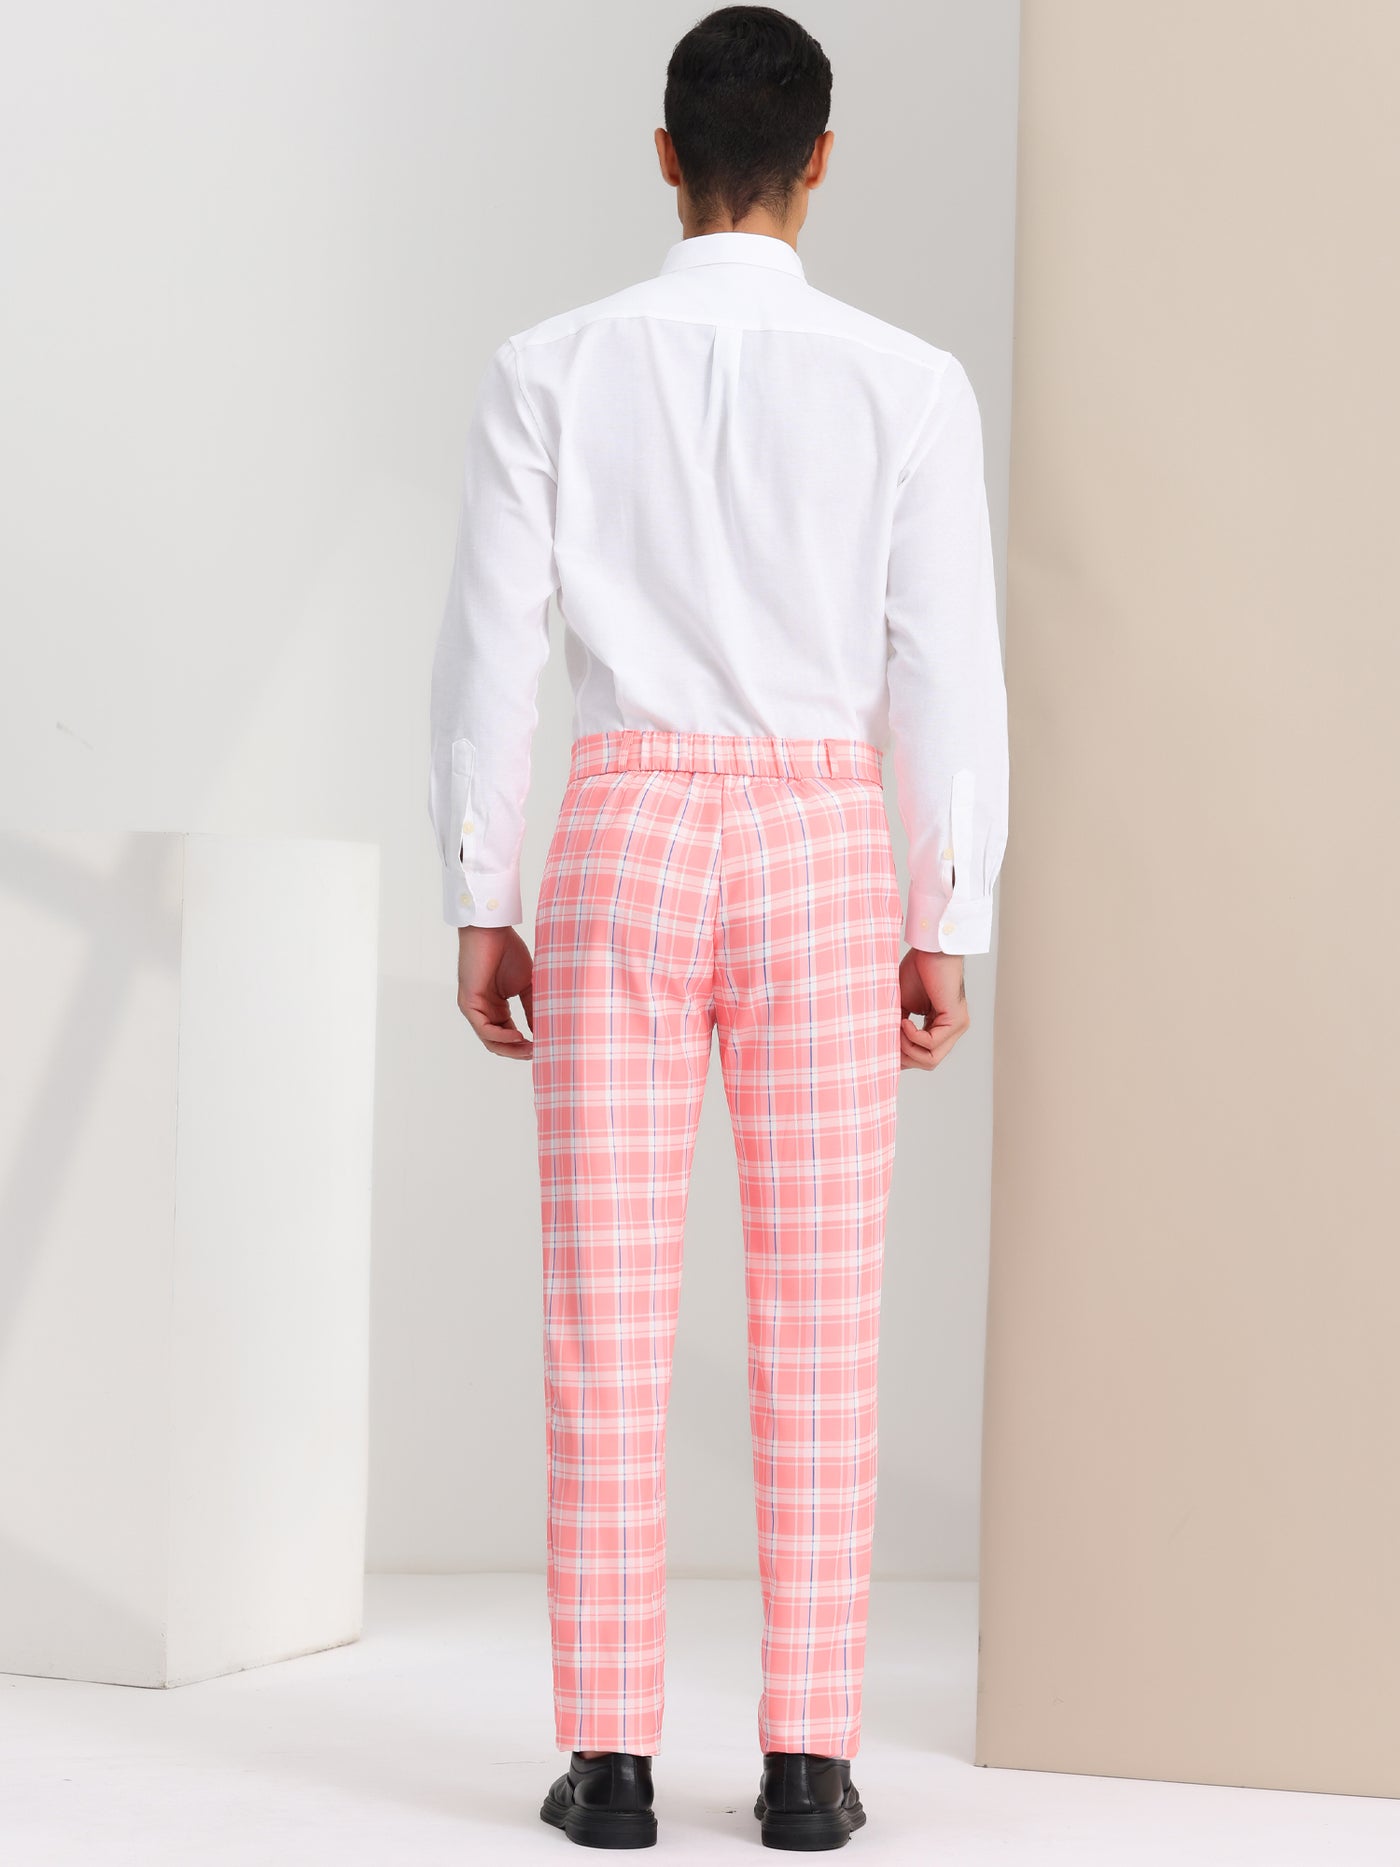 Bublédon Men's Regular Fit Flat Front Classic Elastic Waist Suit Plaid Pants